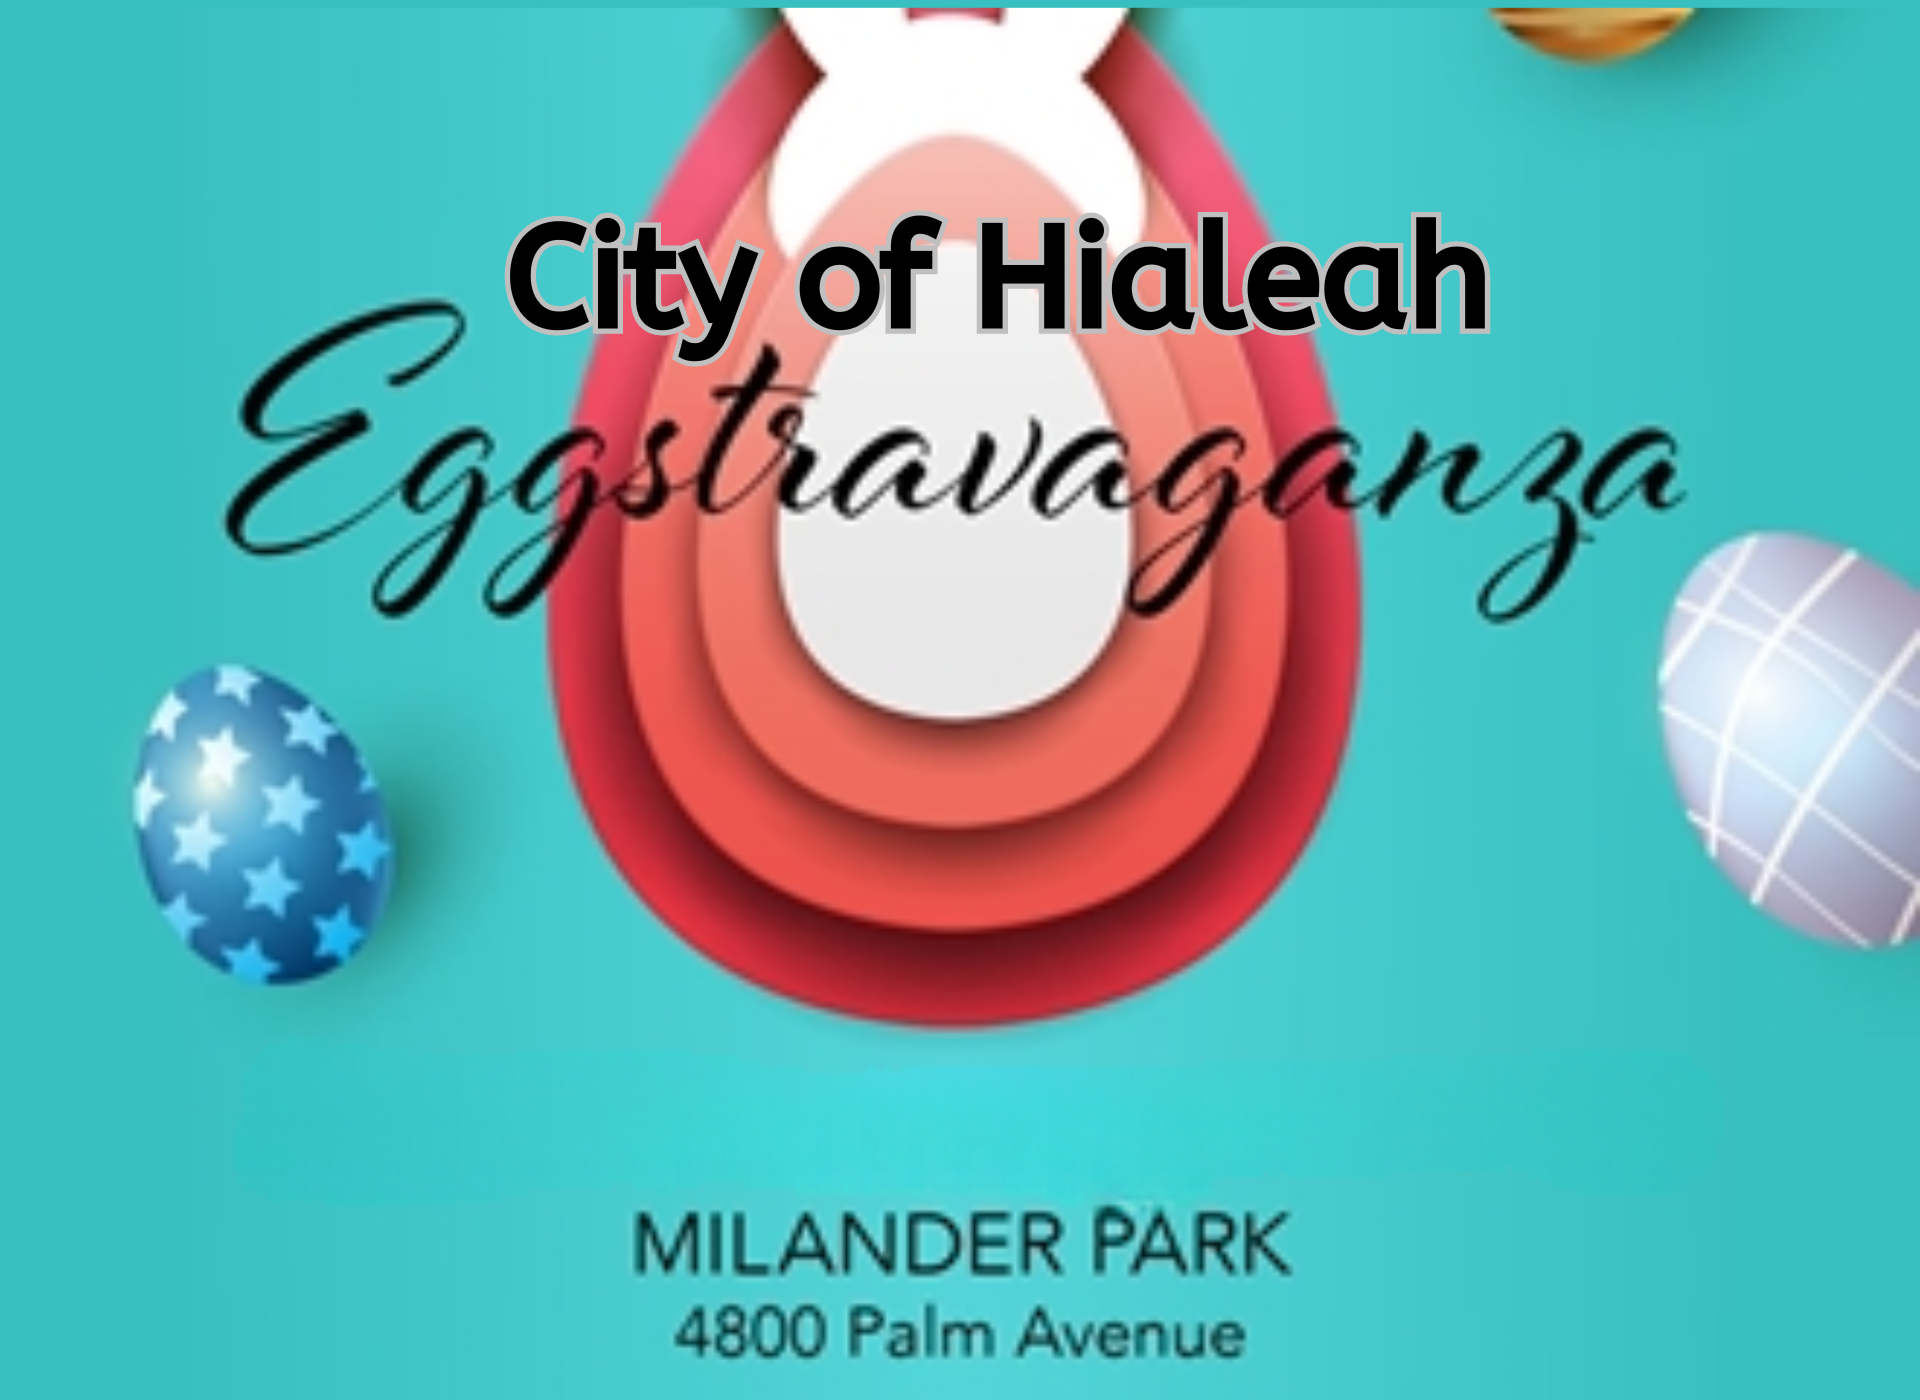 City of Hialeah Eggstravaganza - Milander park